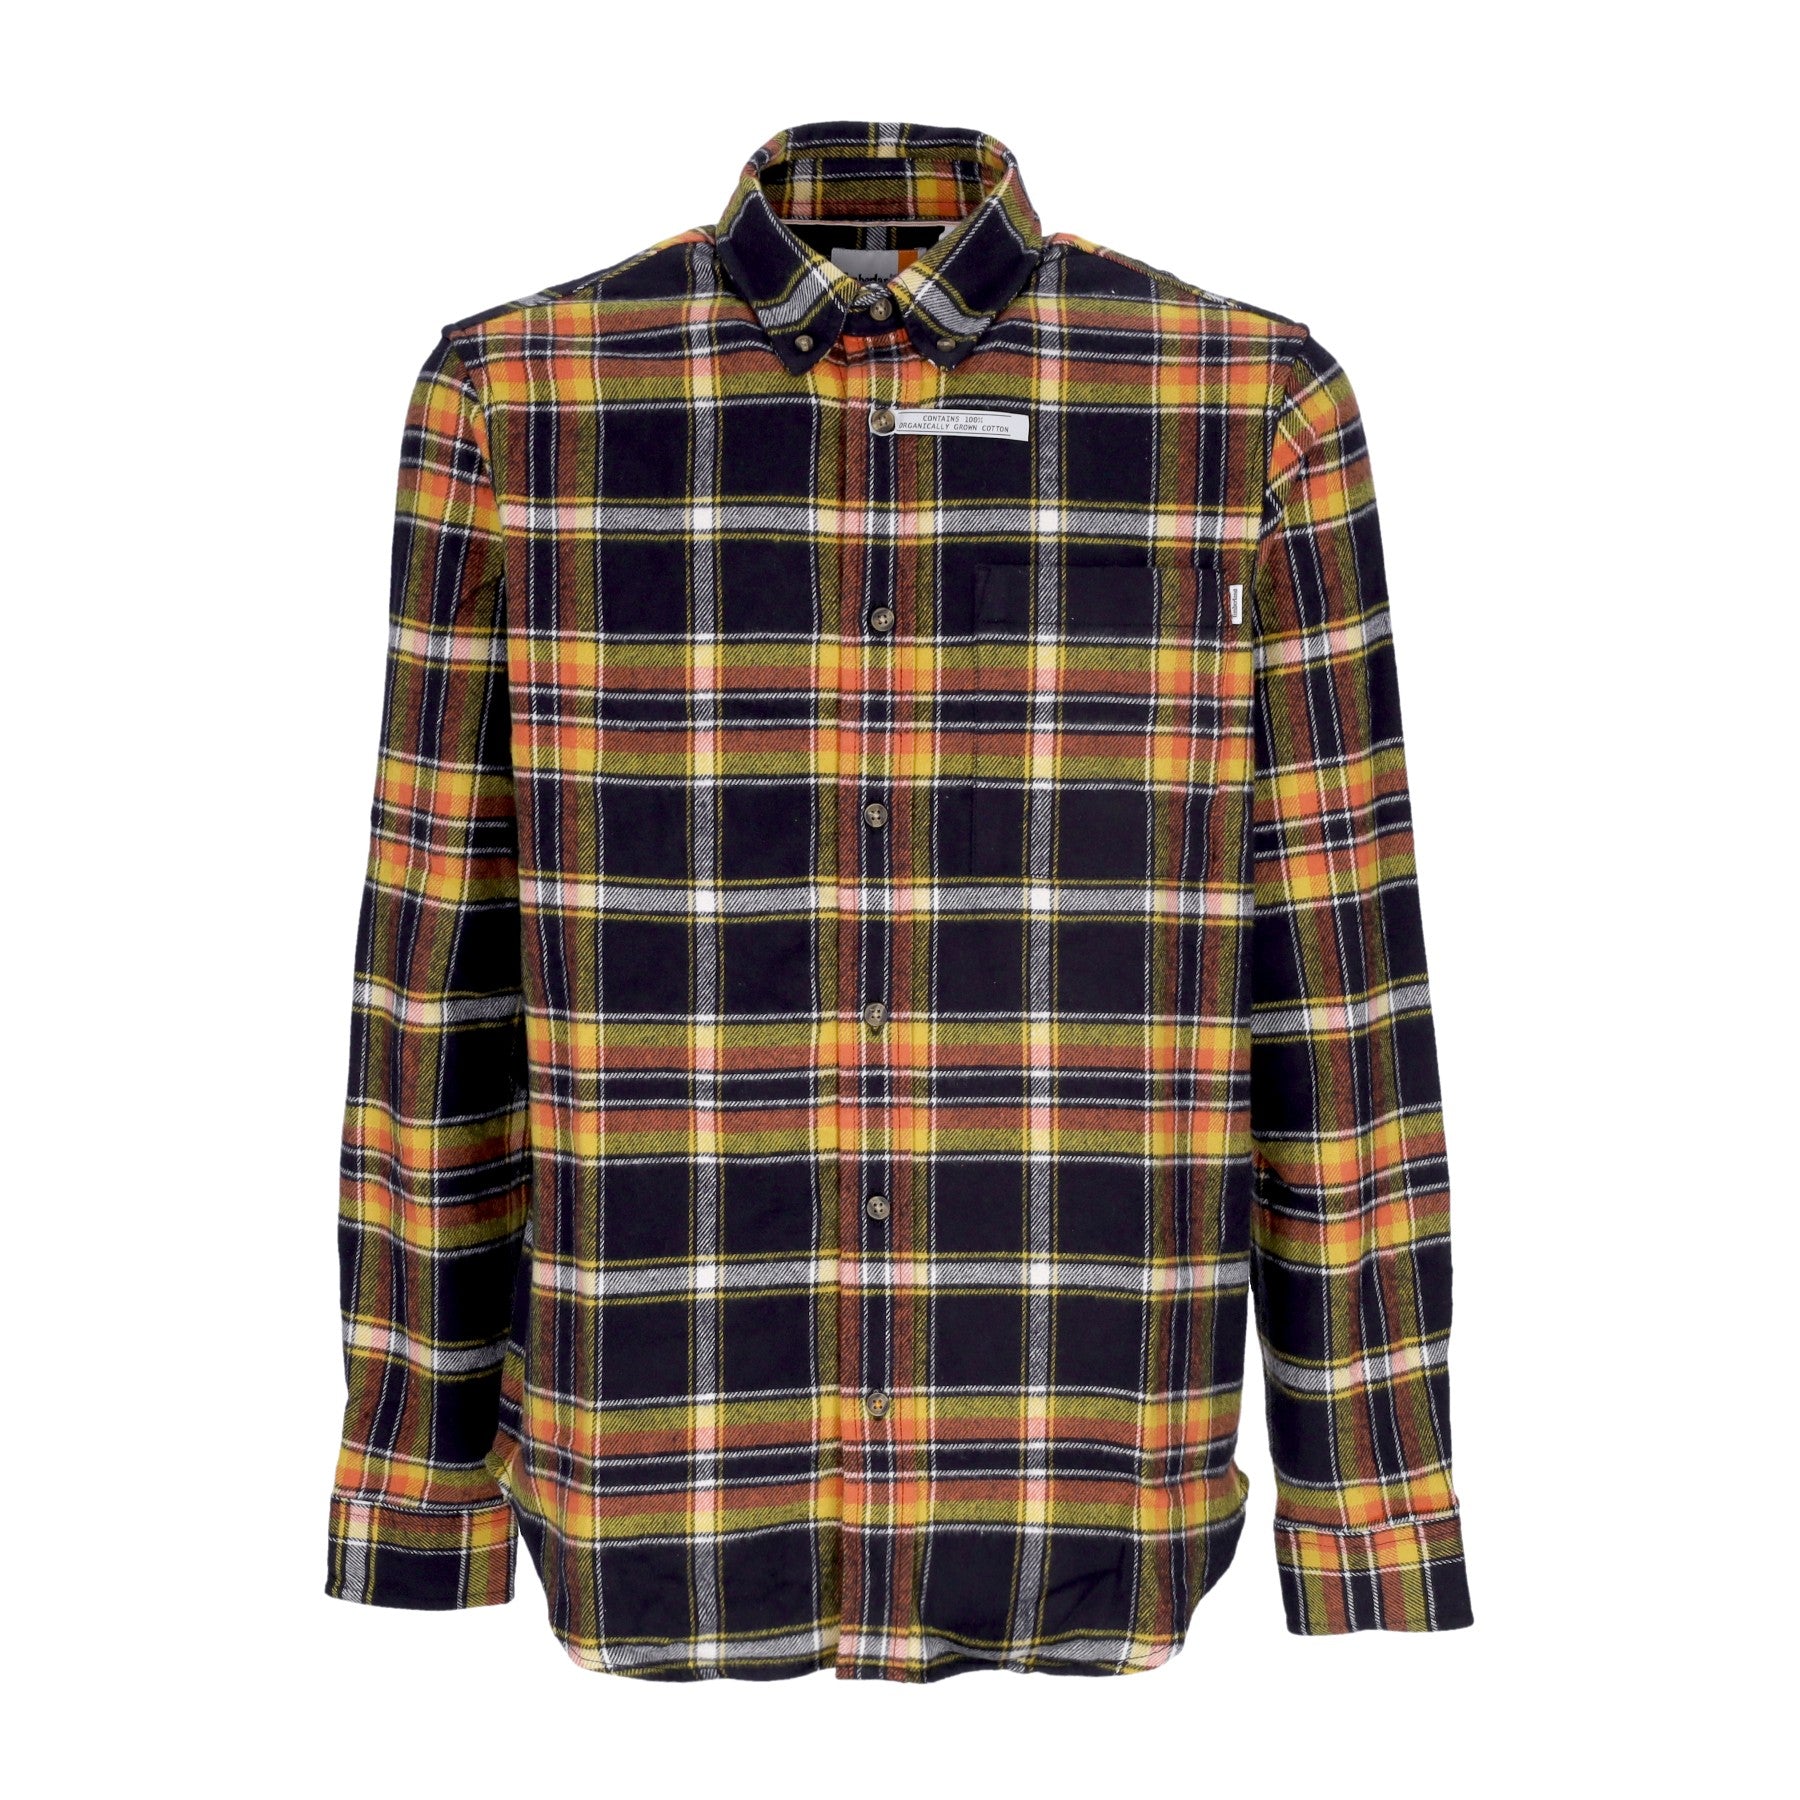 Timberland, Camicia Manica Lunga Uomo Flannel Plaid Shirt, Black